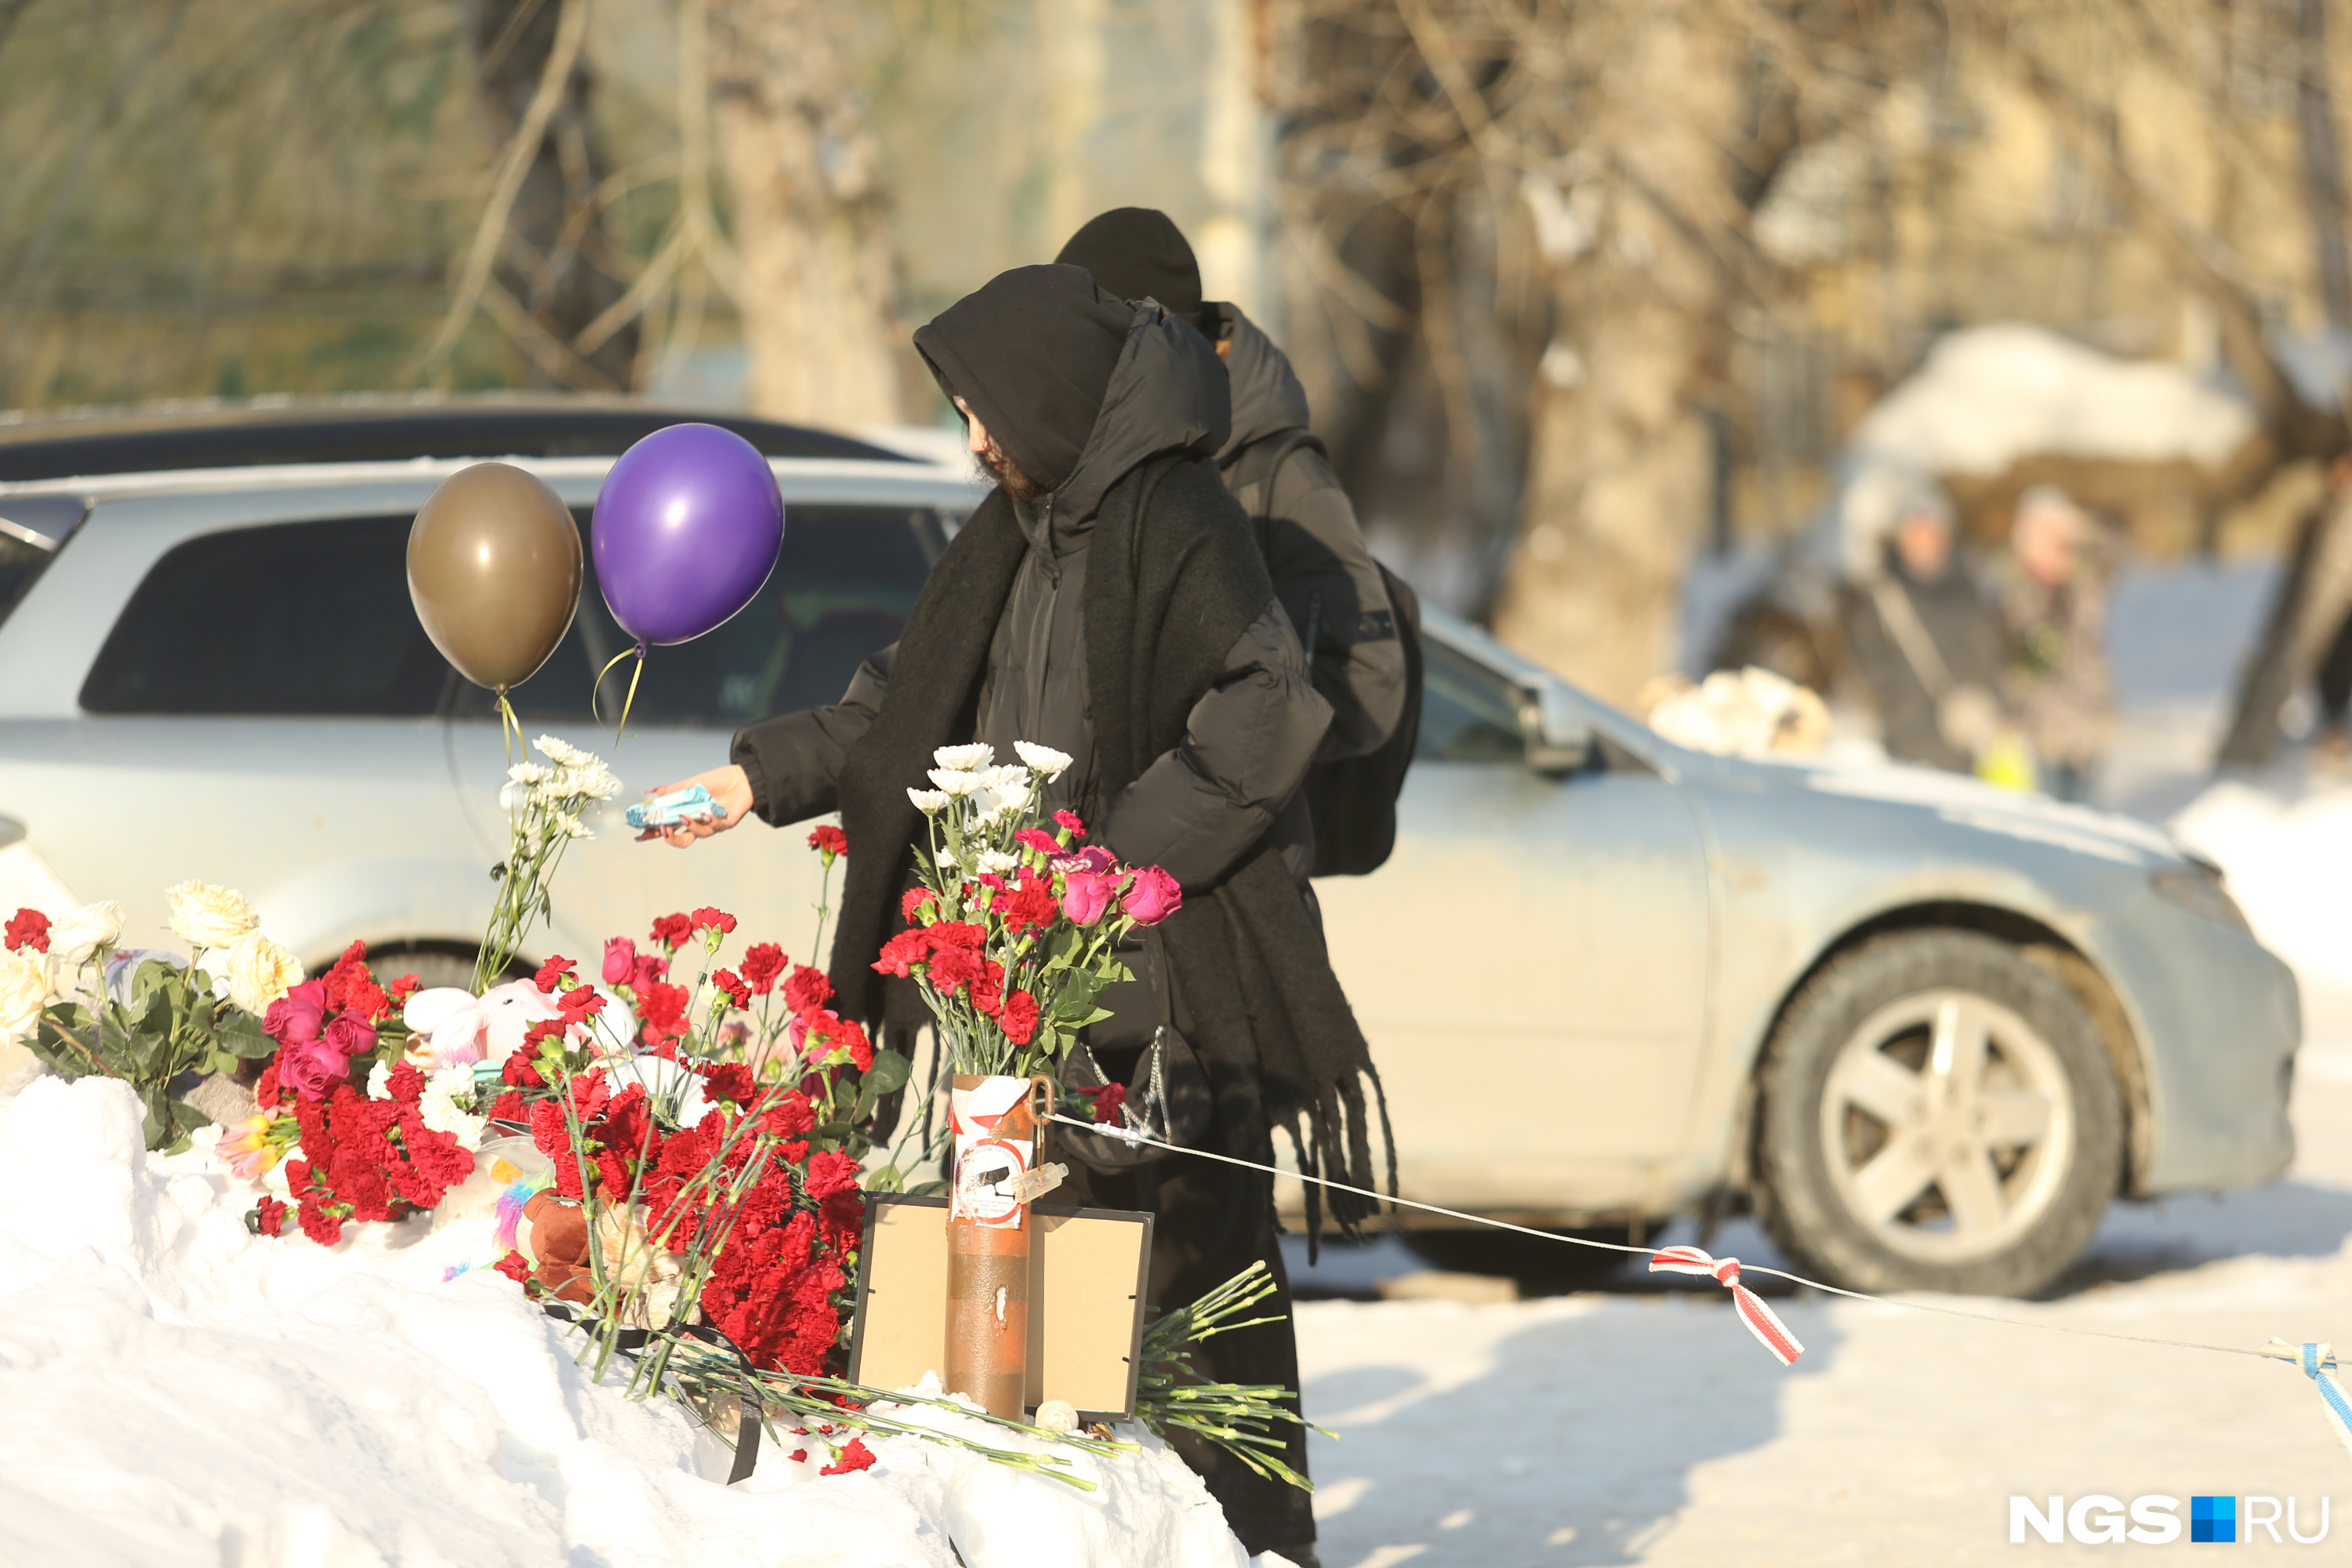 Сочувствующие люди продолжают приносить цветы и детские игрушки к небольшому мемориалу на снегу